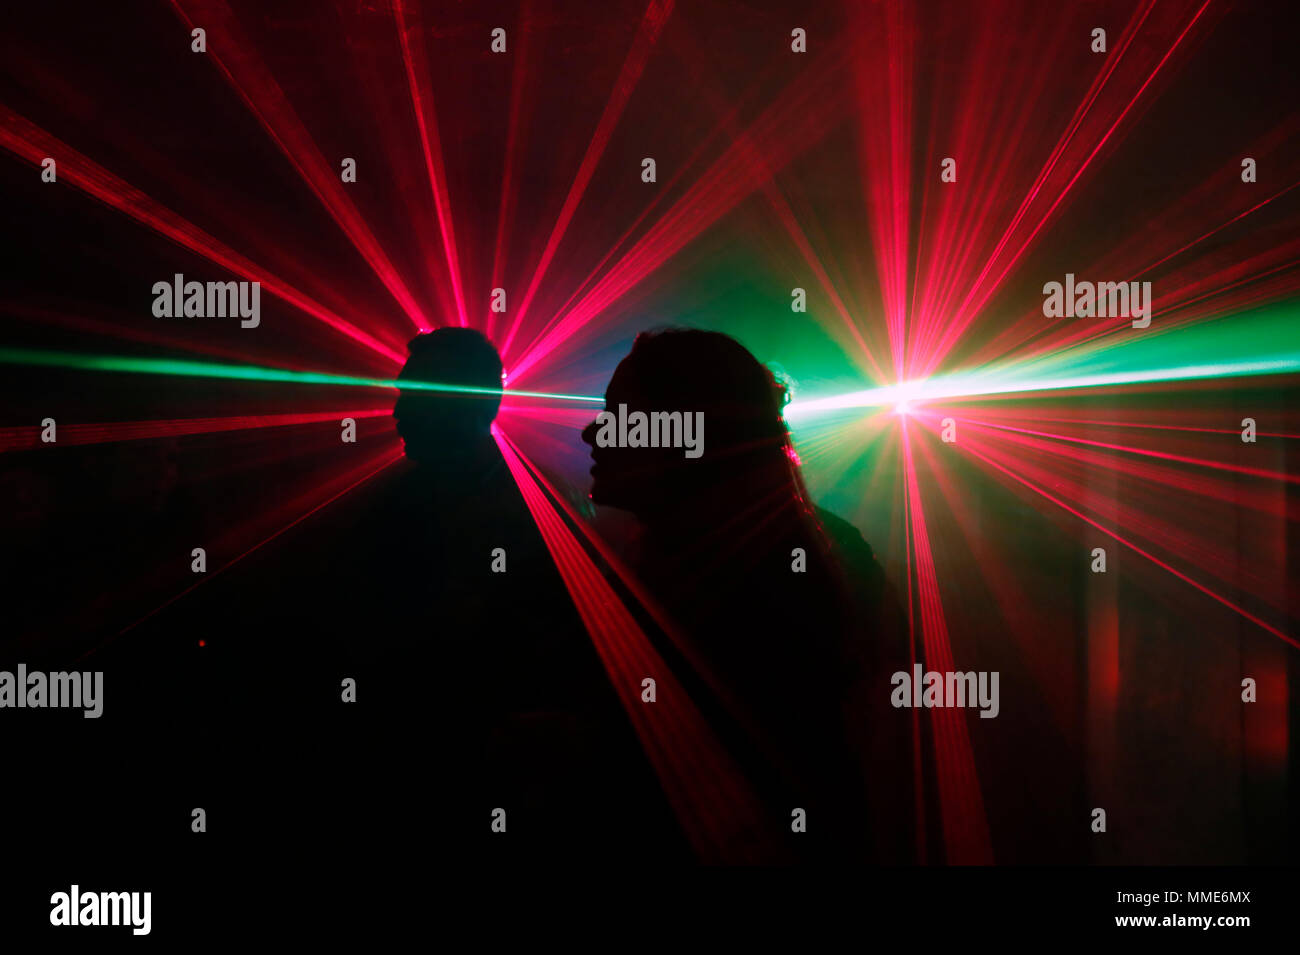 Silueta de un grupo de gente bailando en una discoteca con luces láser. Foto de stock